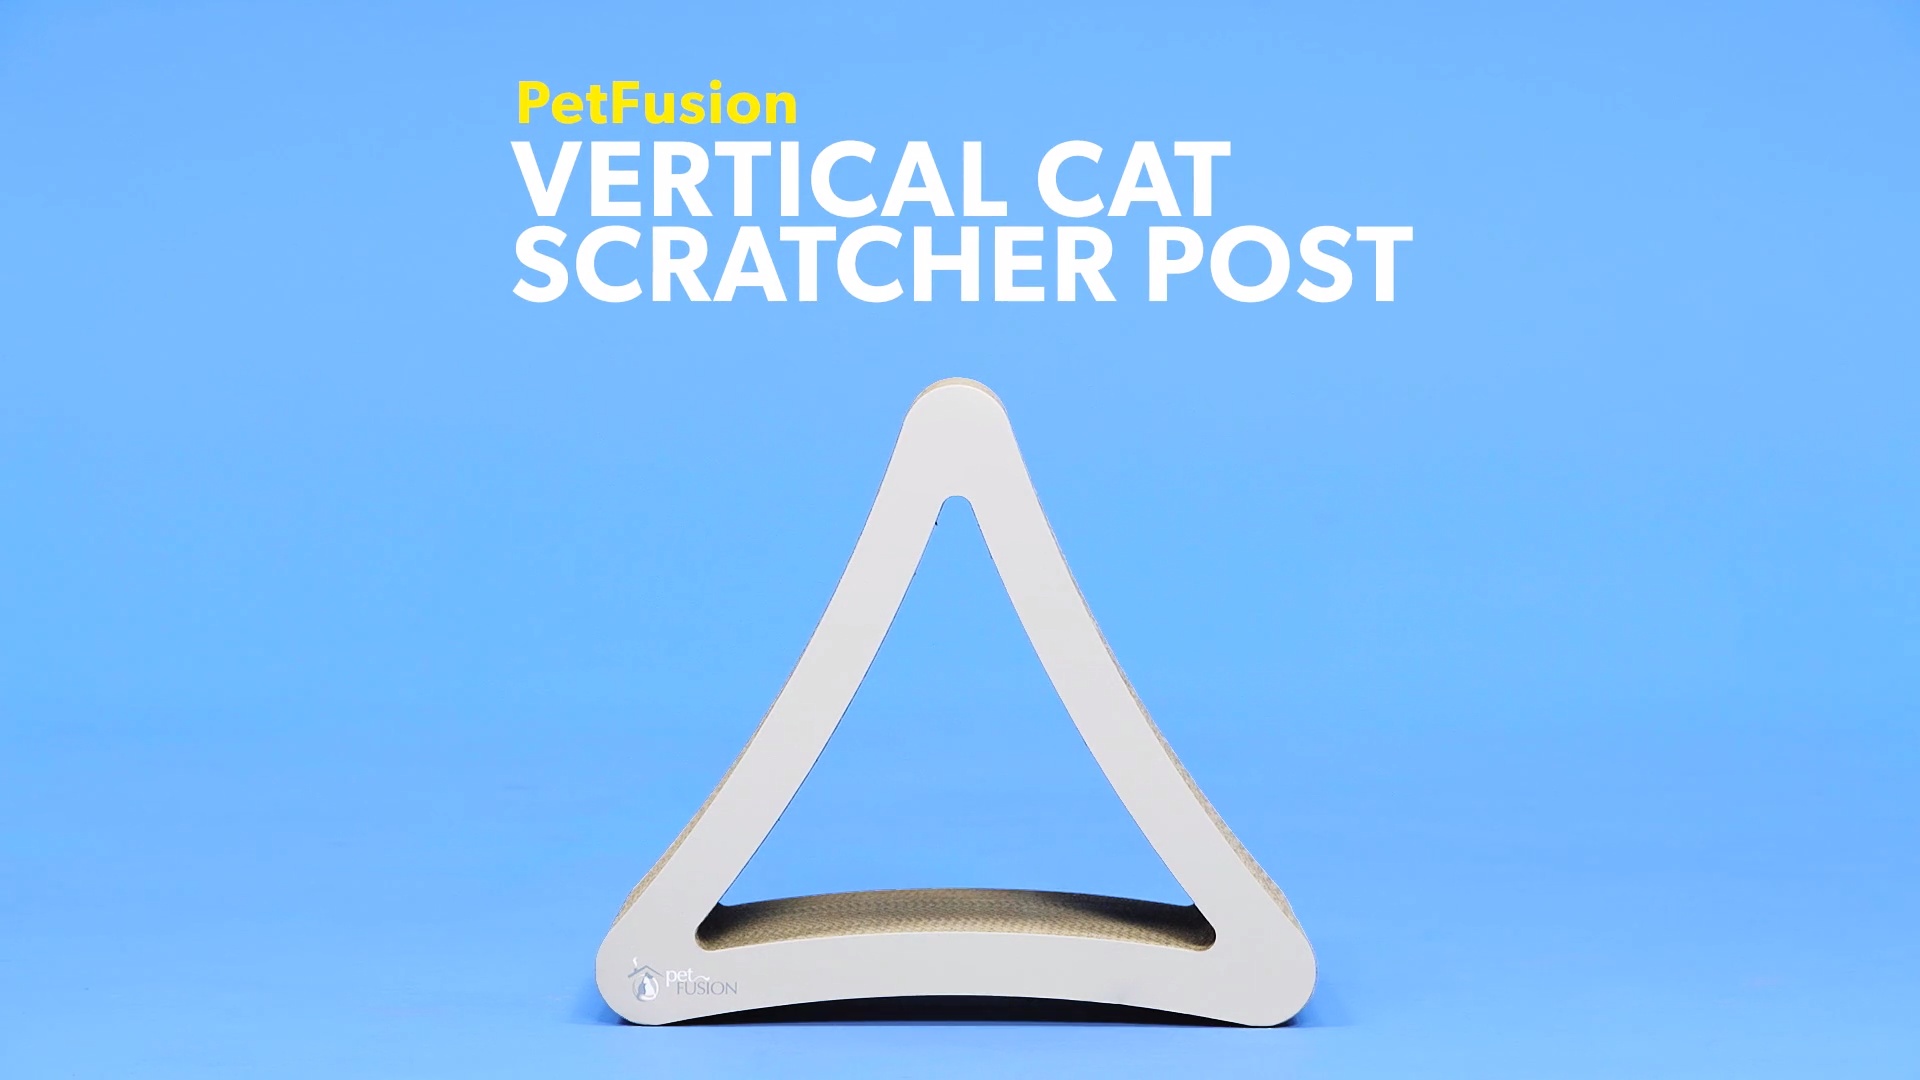 petfusion ultimate cat scratcher